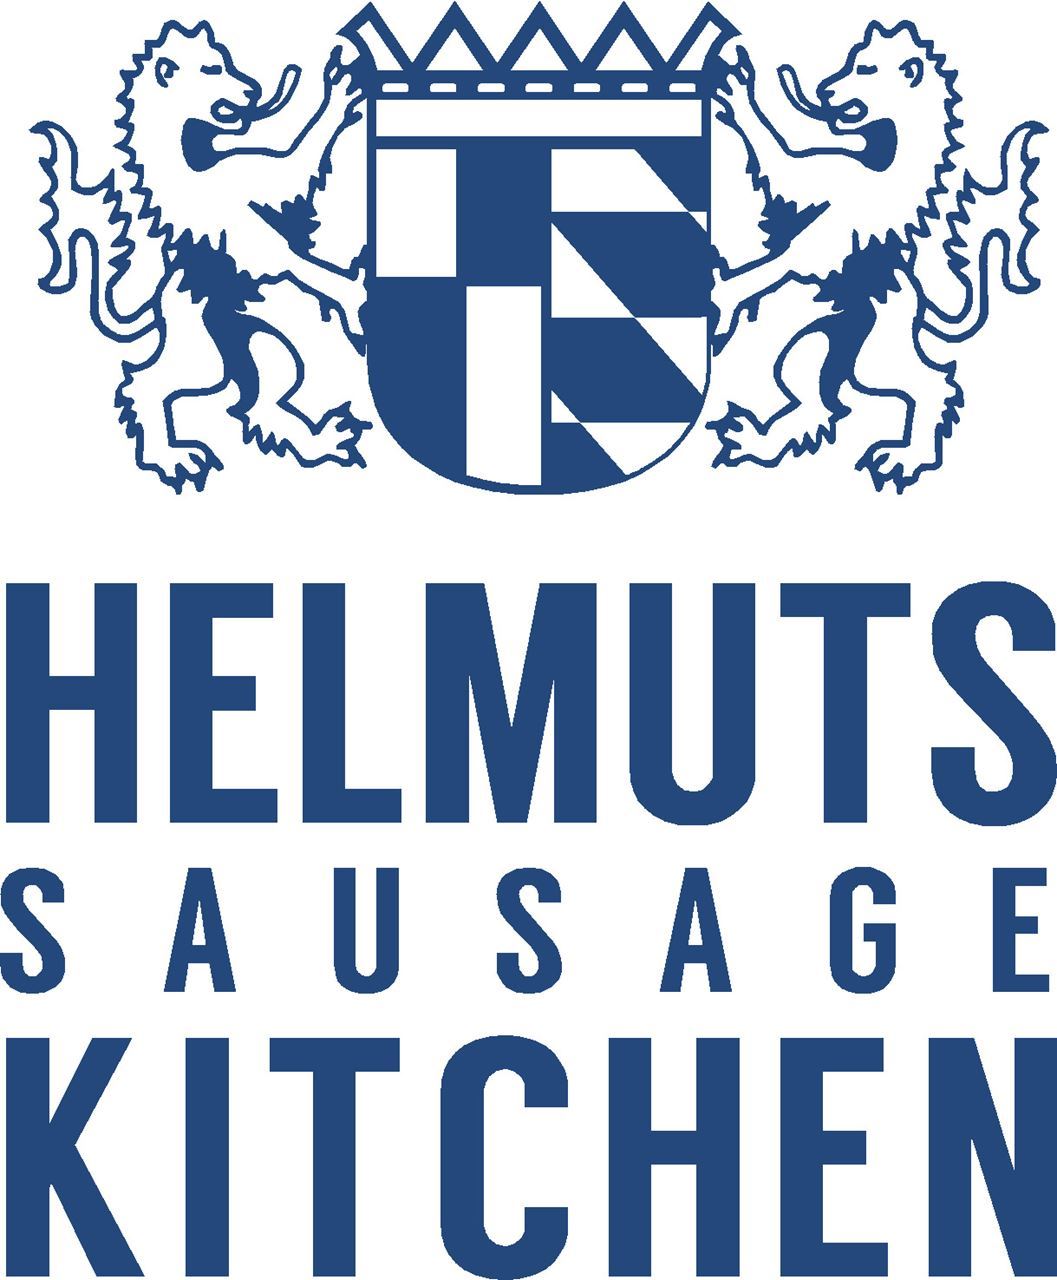 Helmuts Sausage Kitchen